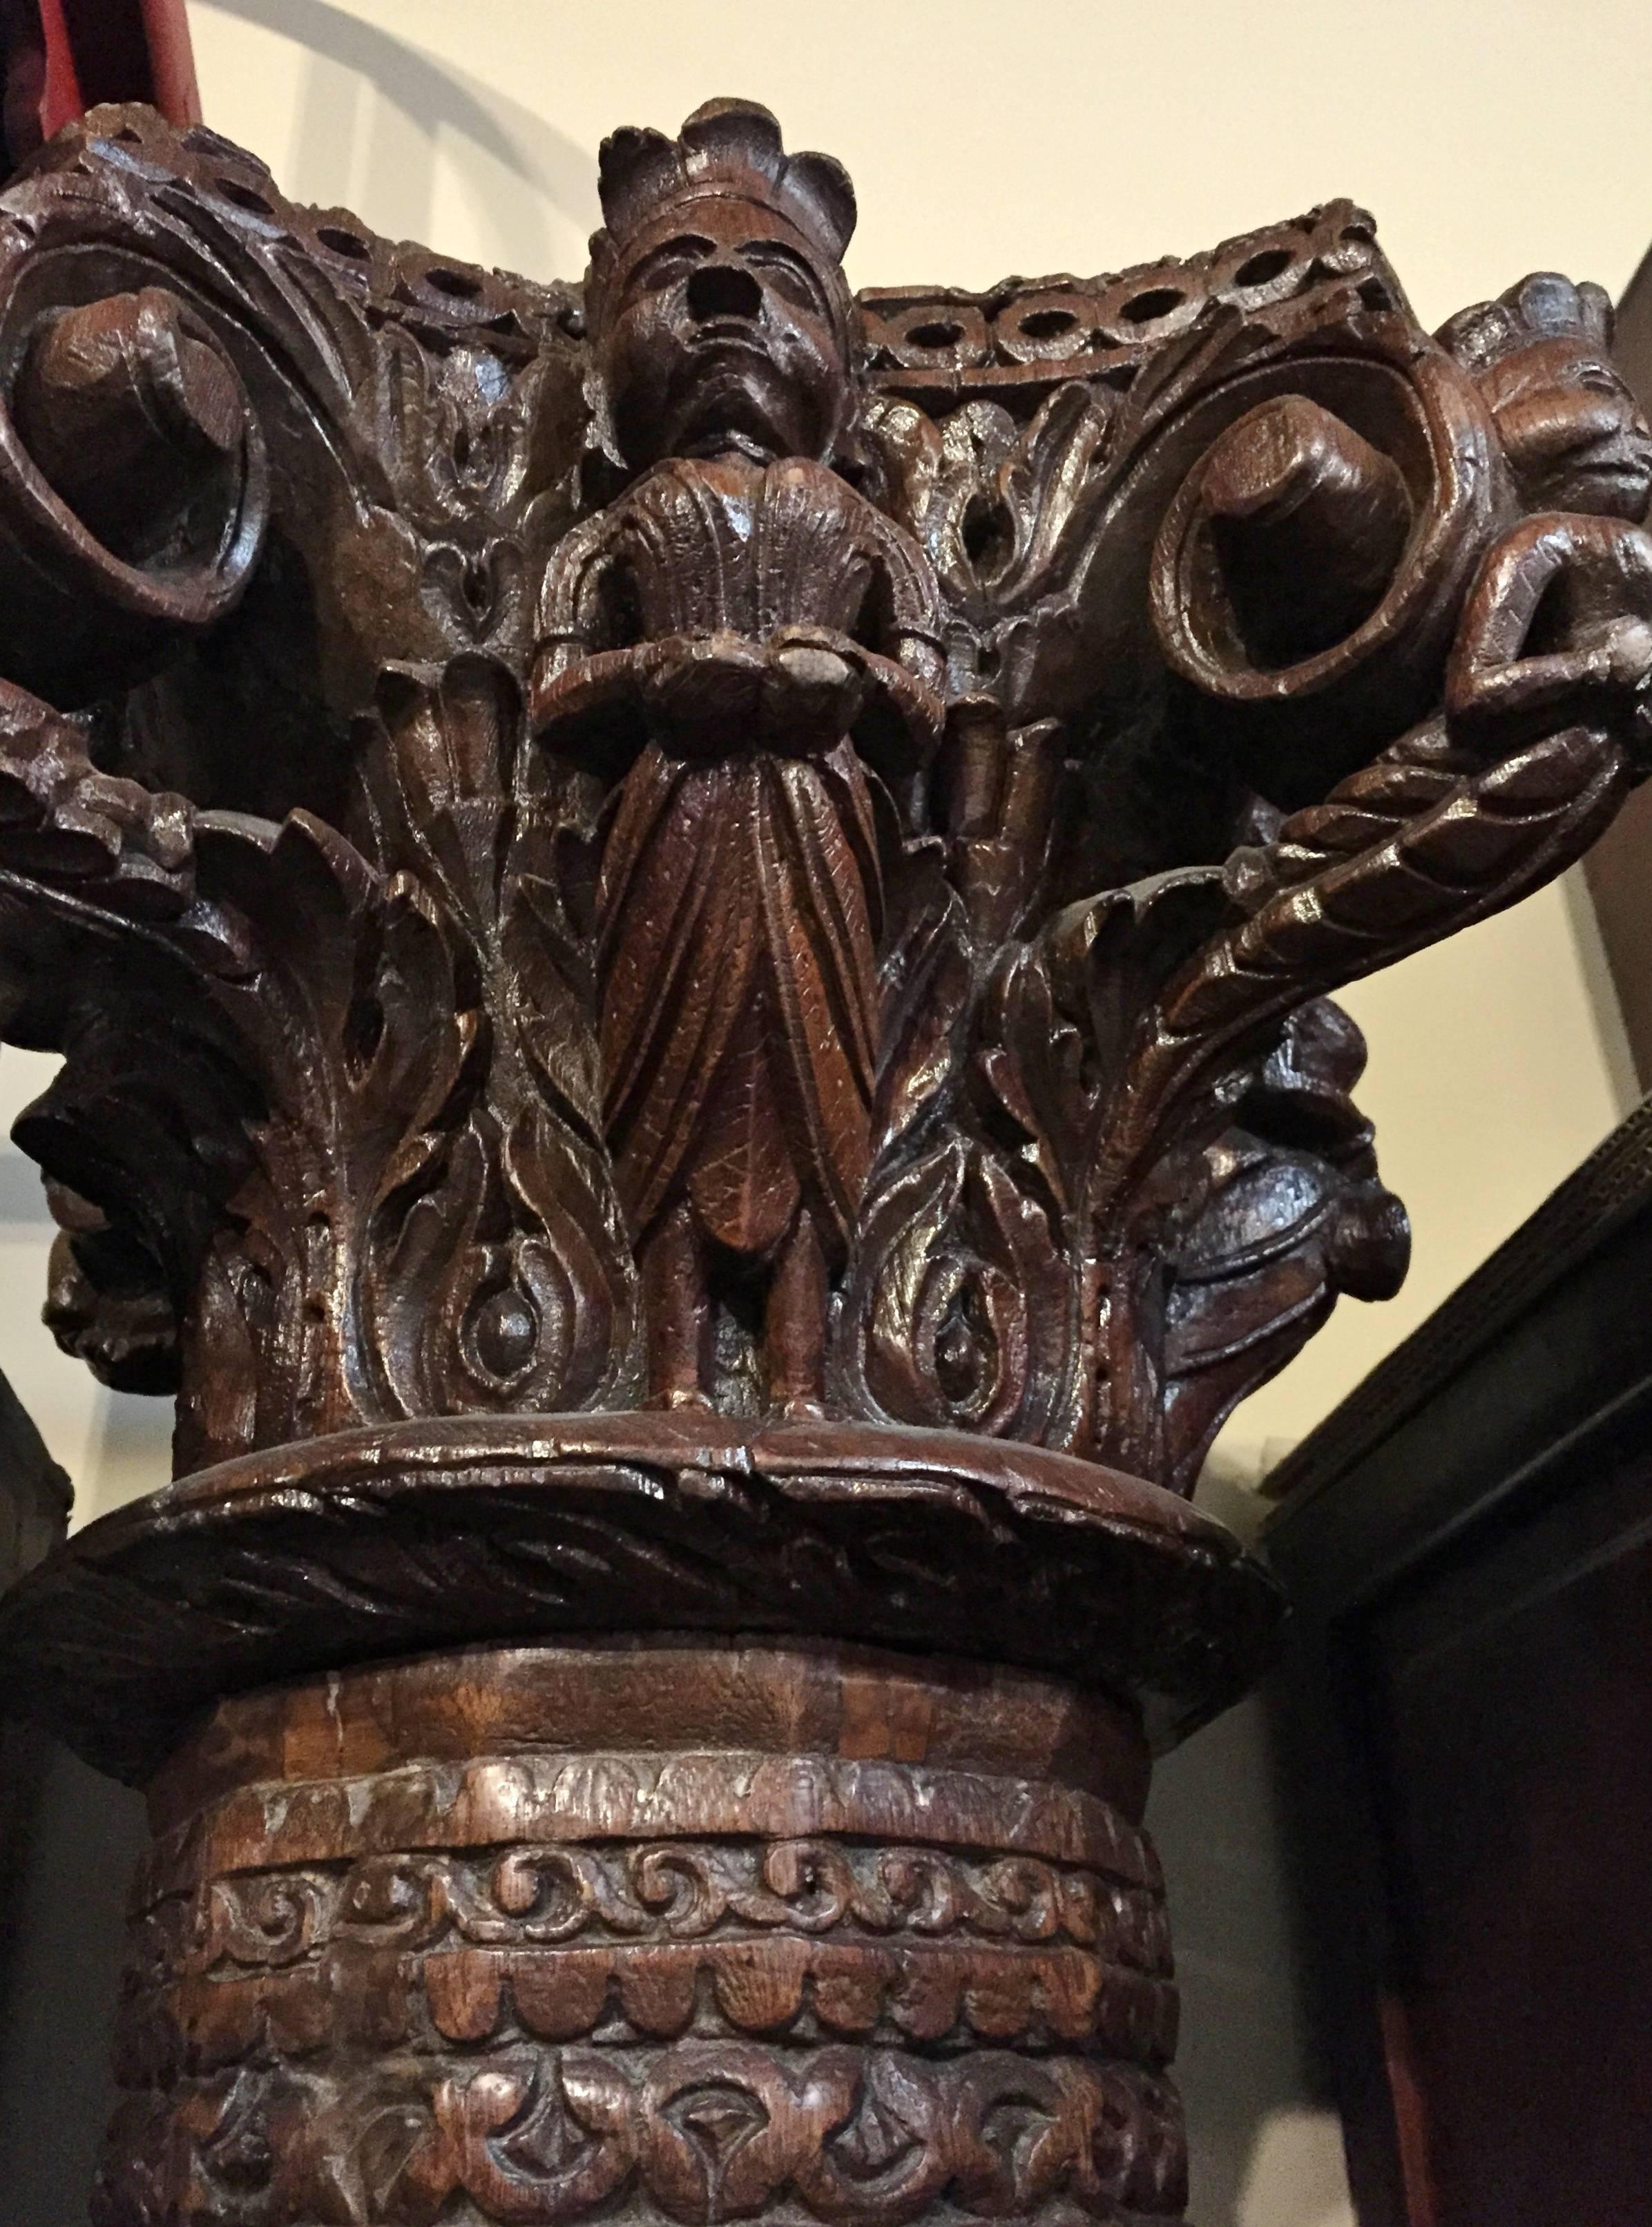 Cette extraordinaire colonne de 88 pouces de haut possède sa base en granit d'origine, est fabriquée en bois de teck massif et présente une couronne sculptée de manière élaborée. La couronne est sculptée sur les quatre côtés, chaque côté présentant